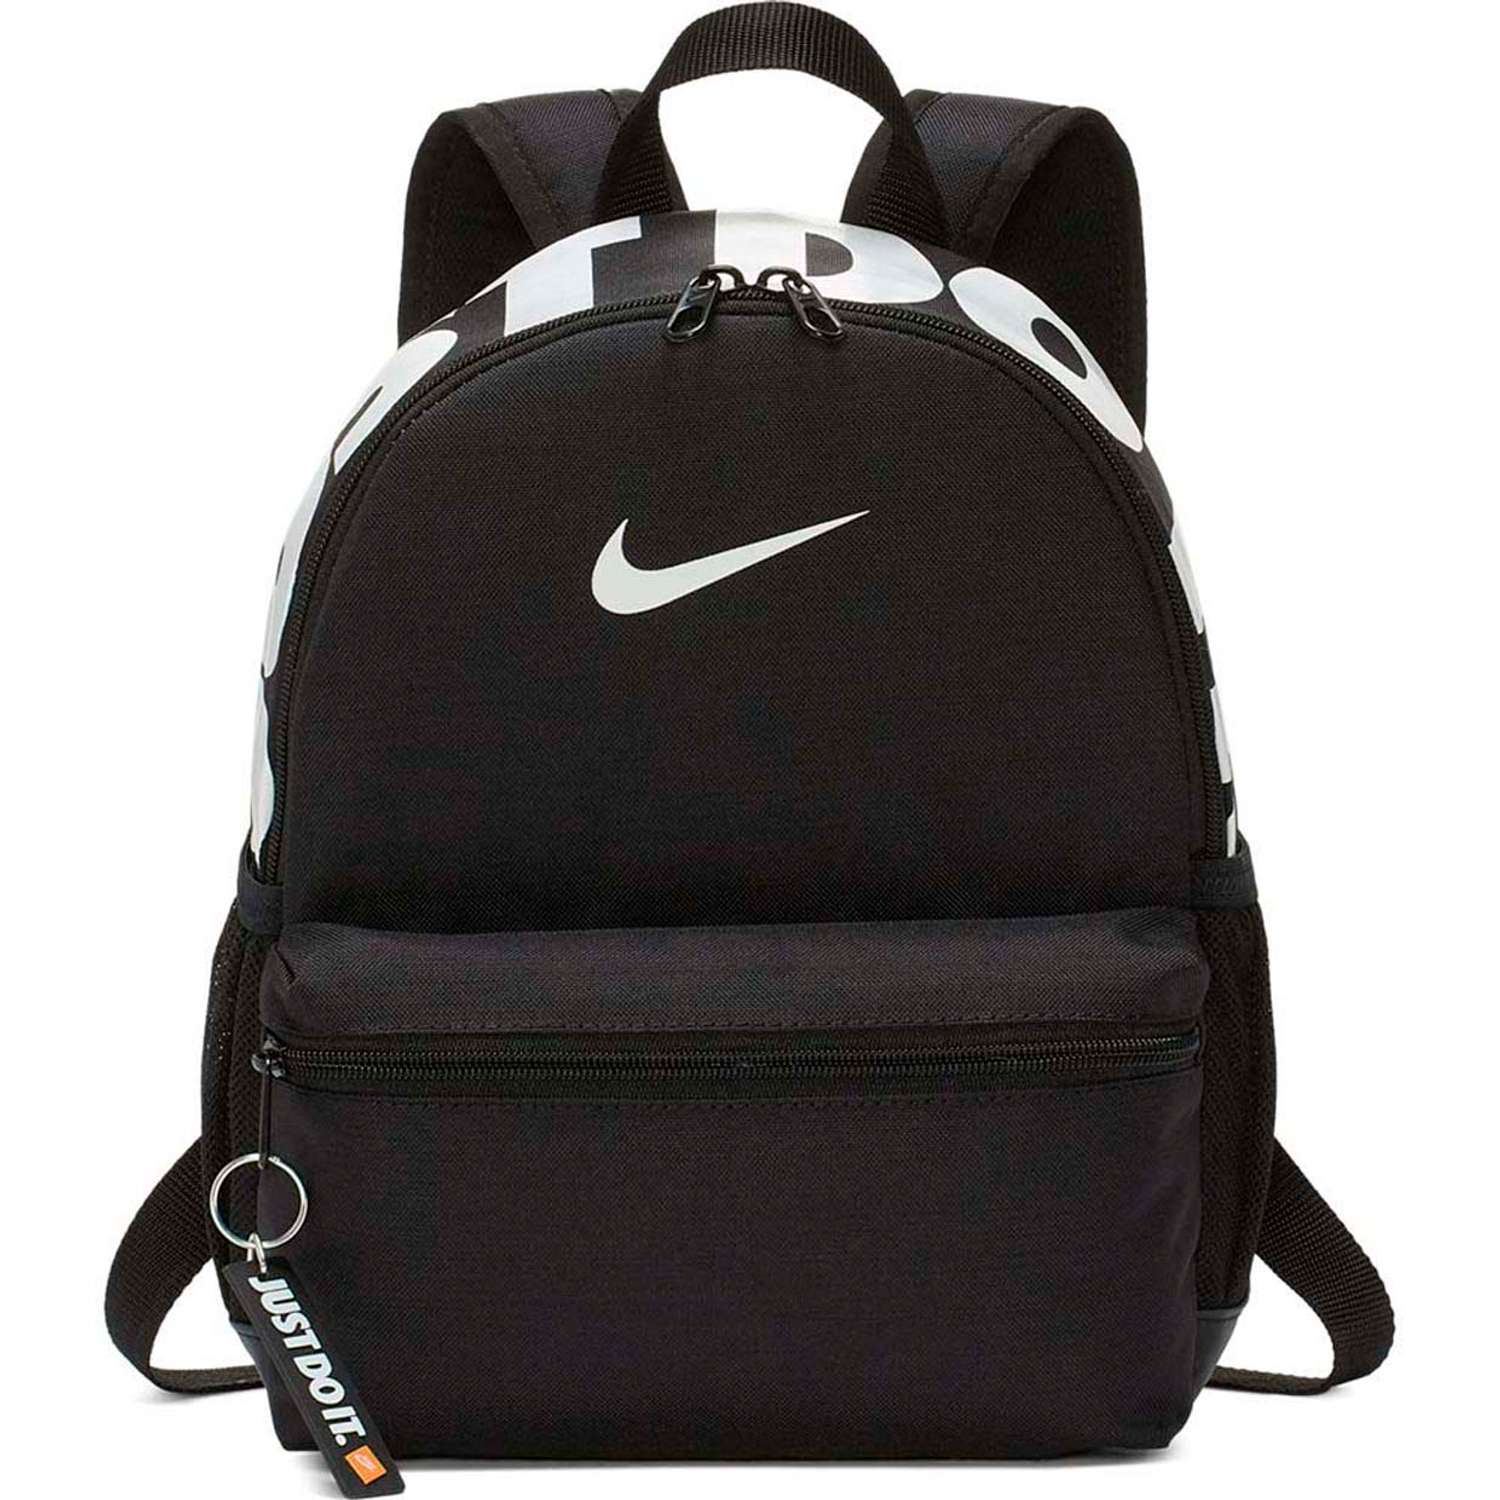 Рюкзак Nike BA5559-013 - фото 1